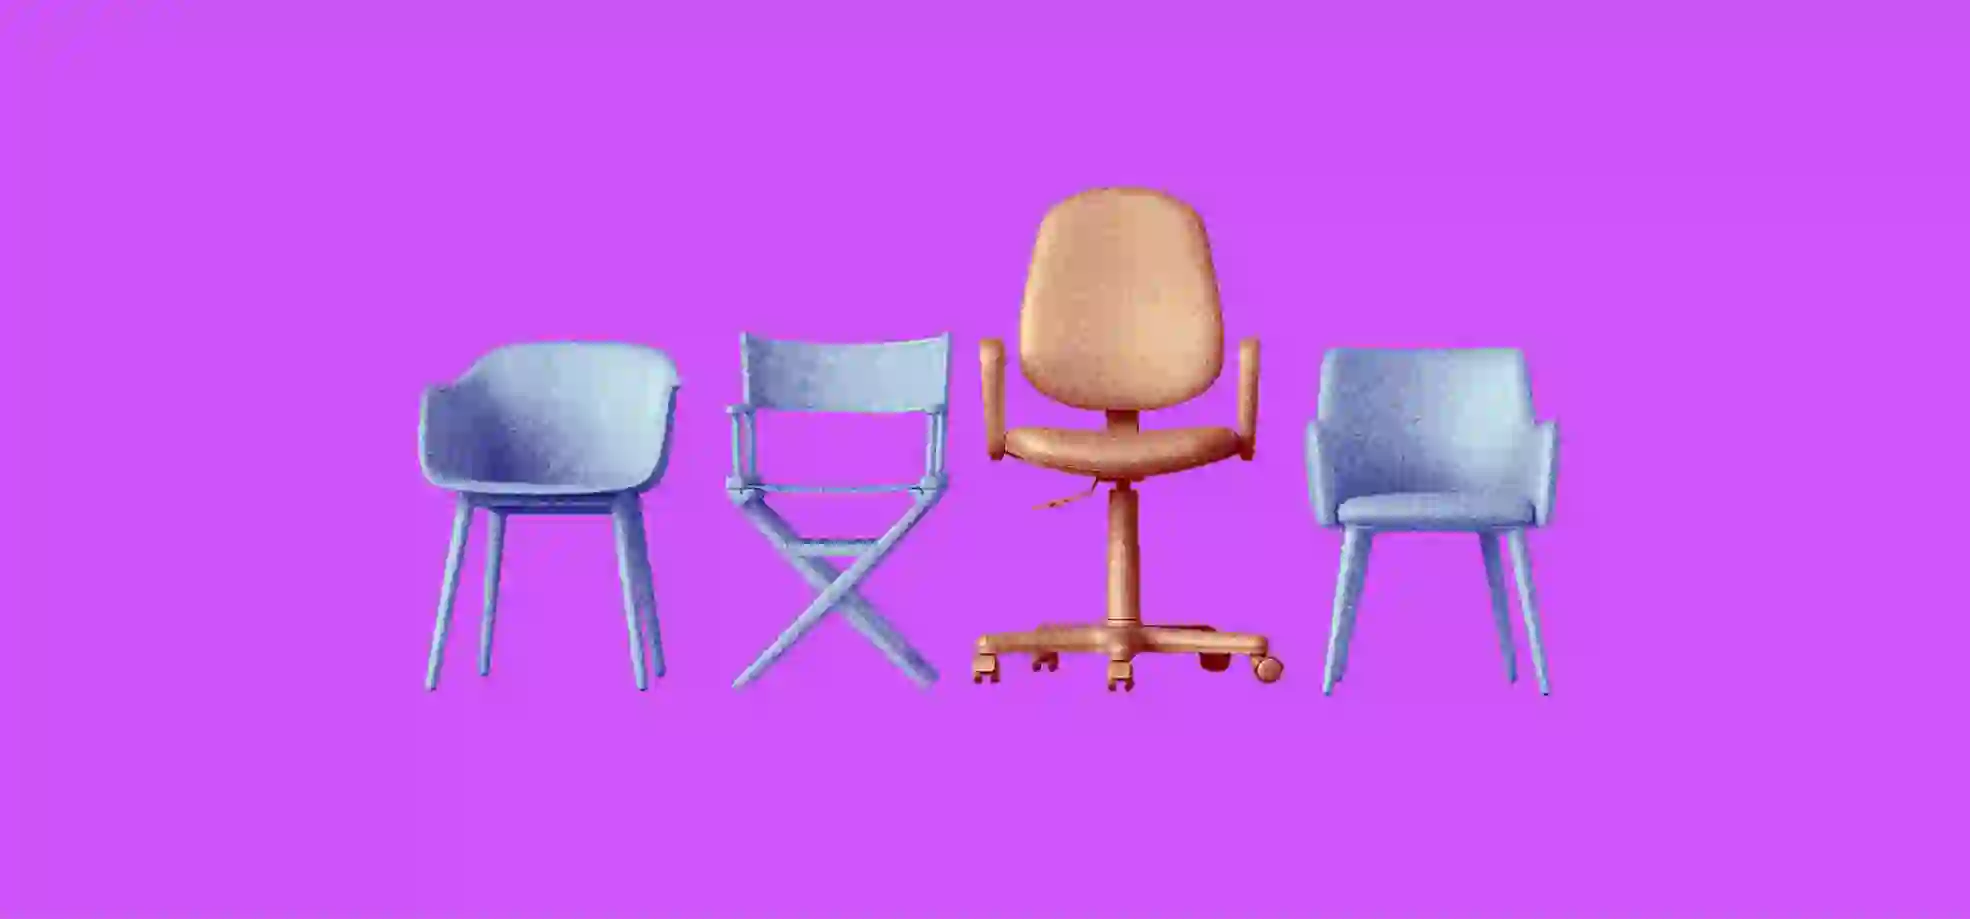 ilustración de 4 sillas de oficina sobre un fondo morado